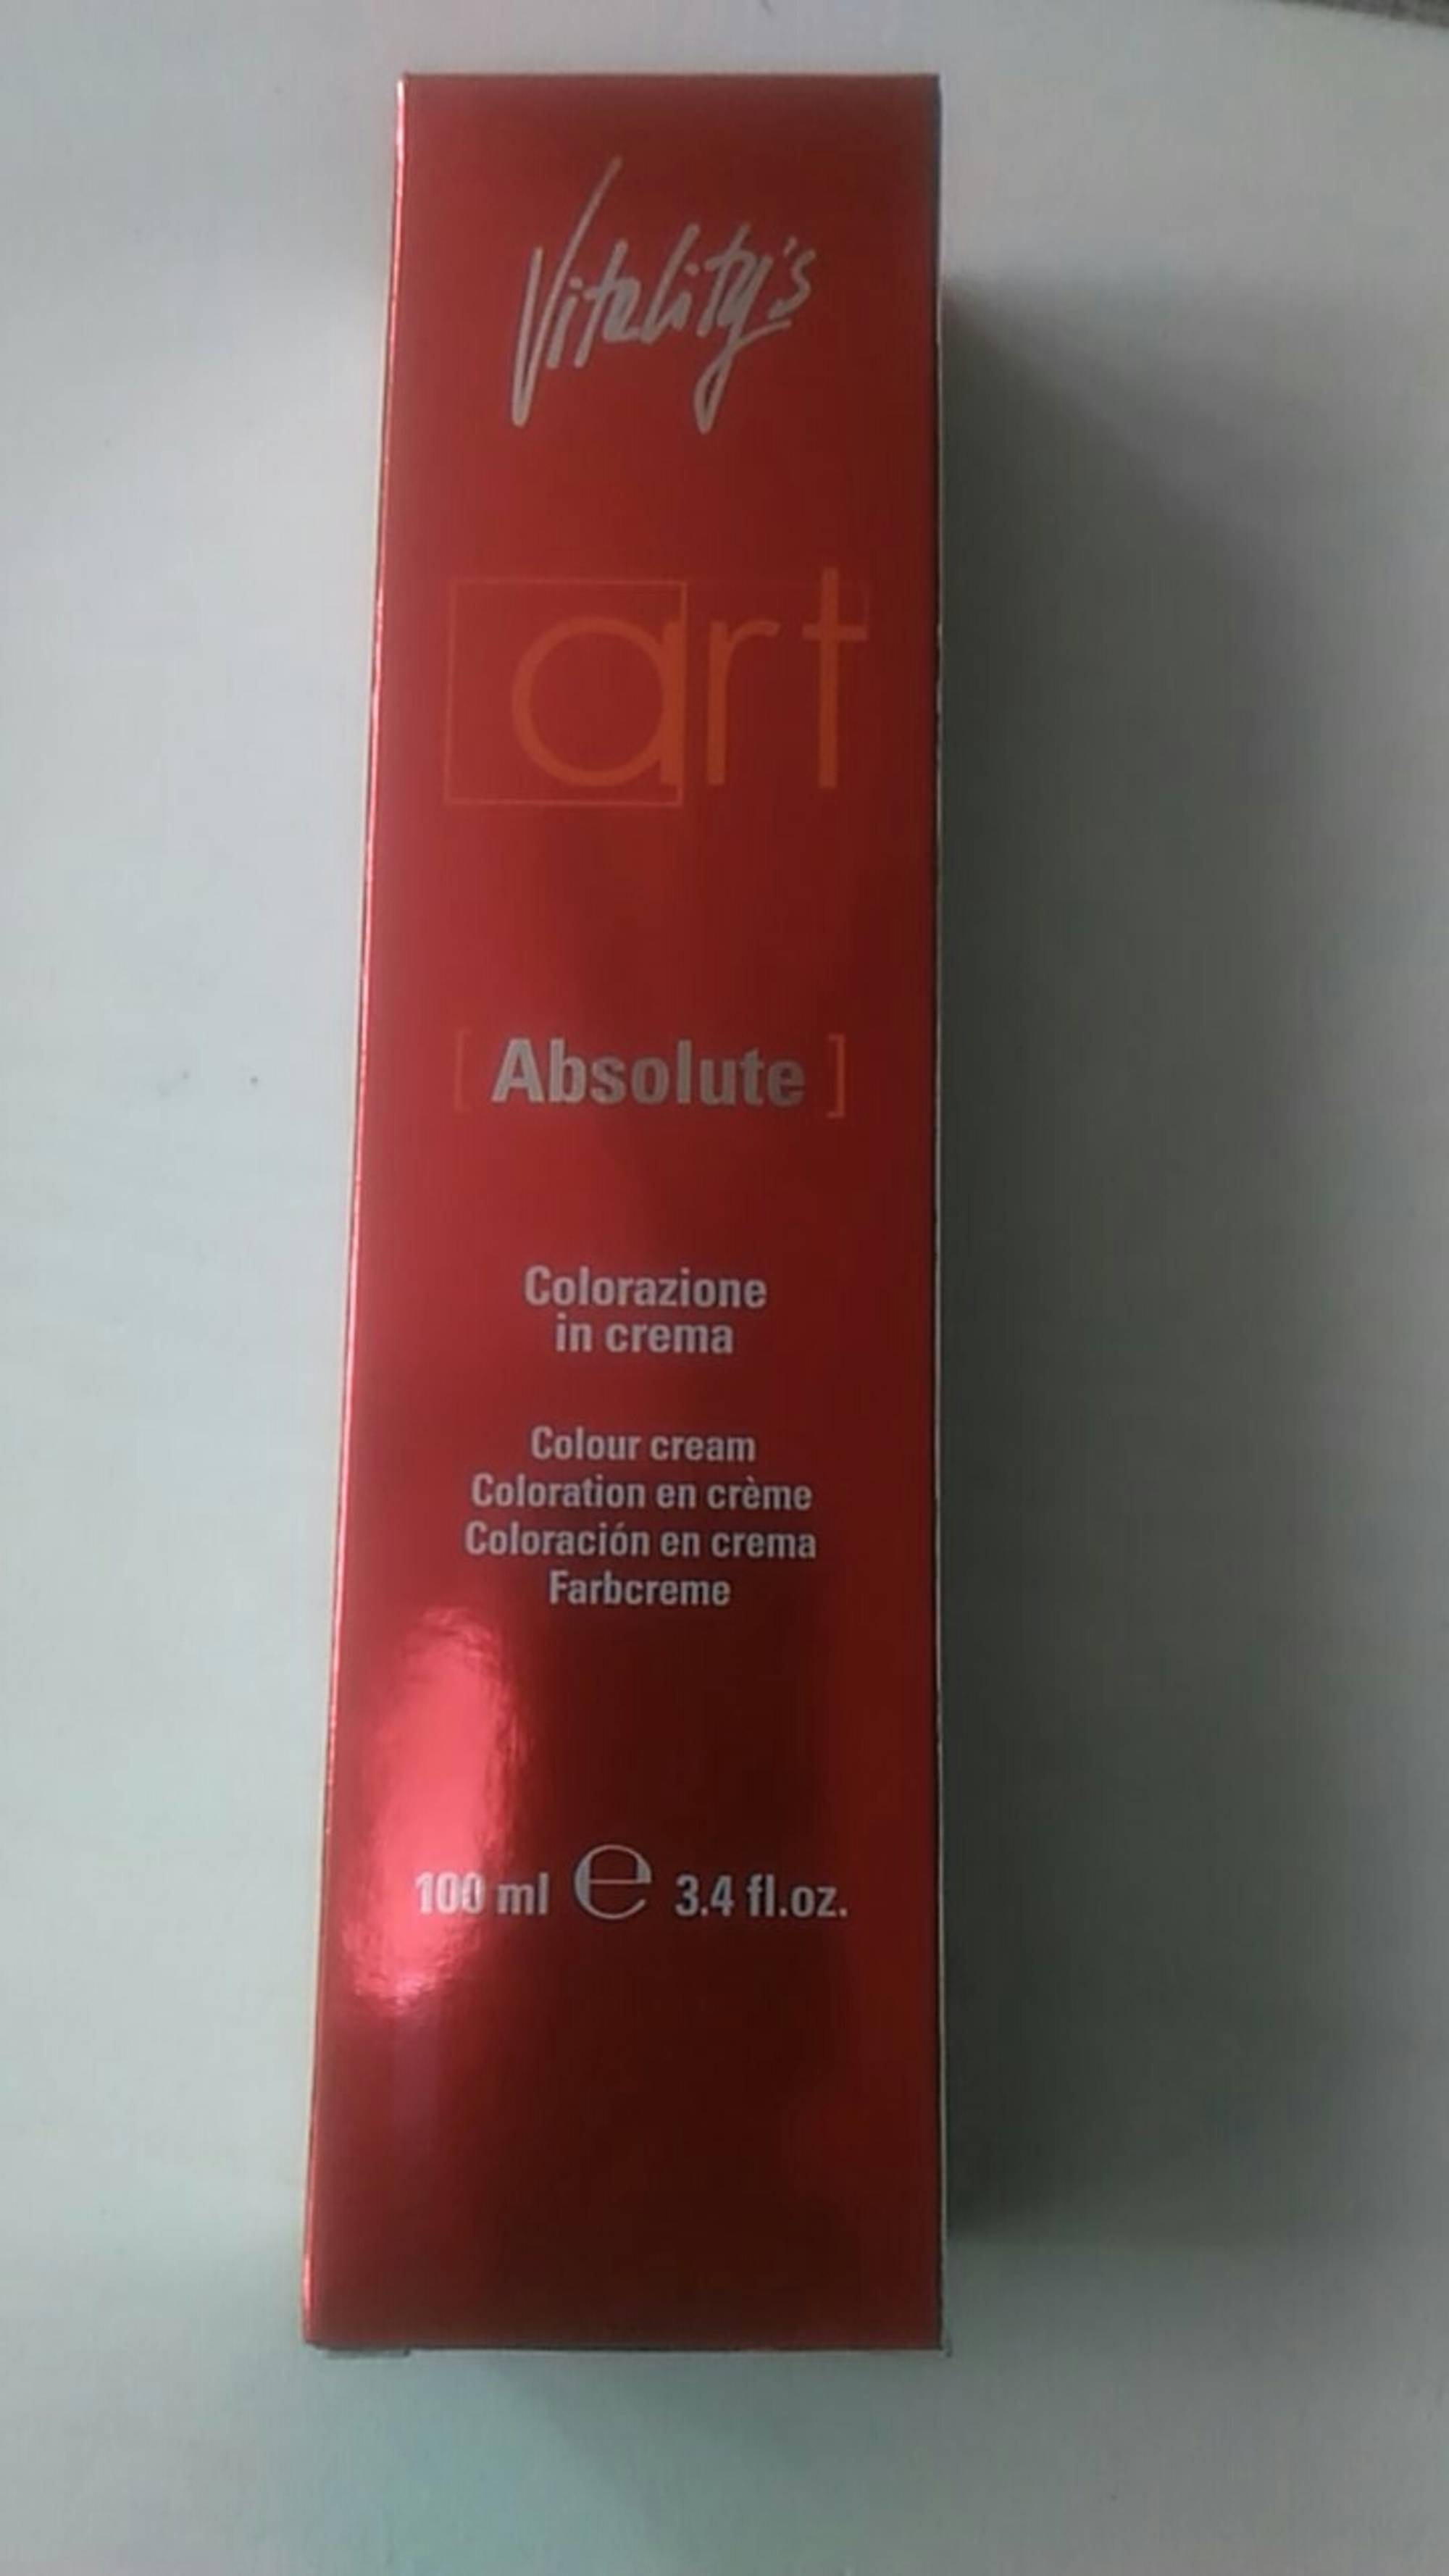 VITALITY'S - Art Absolute - Coloration en crème